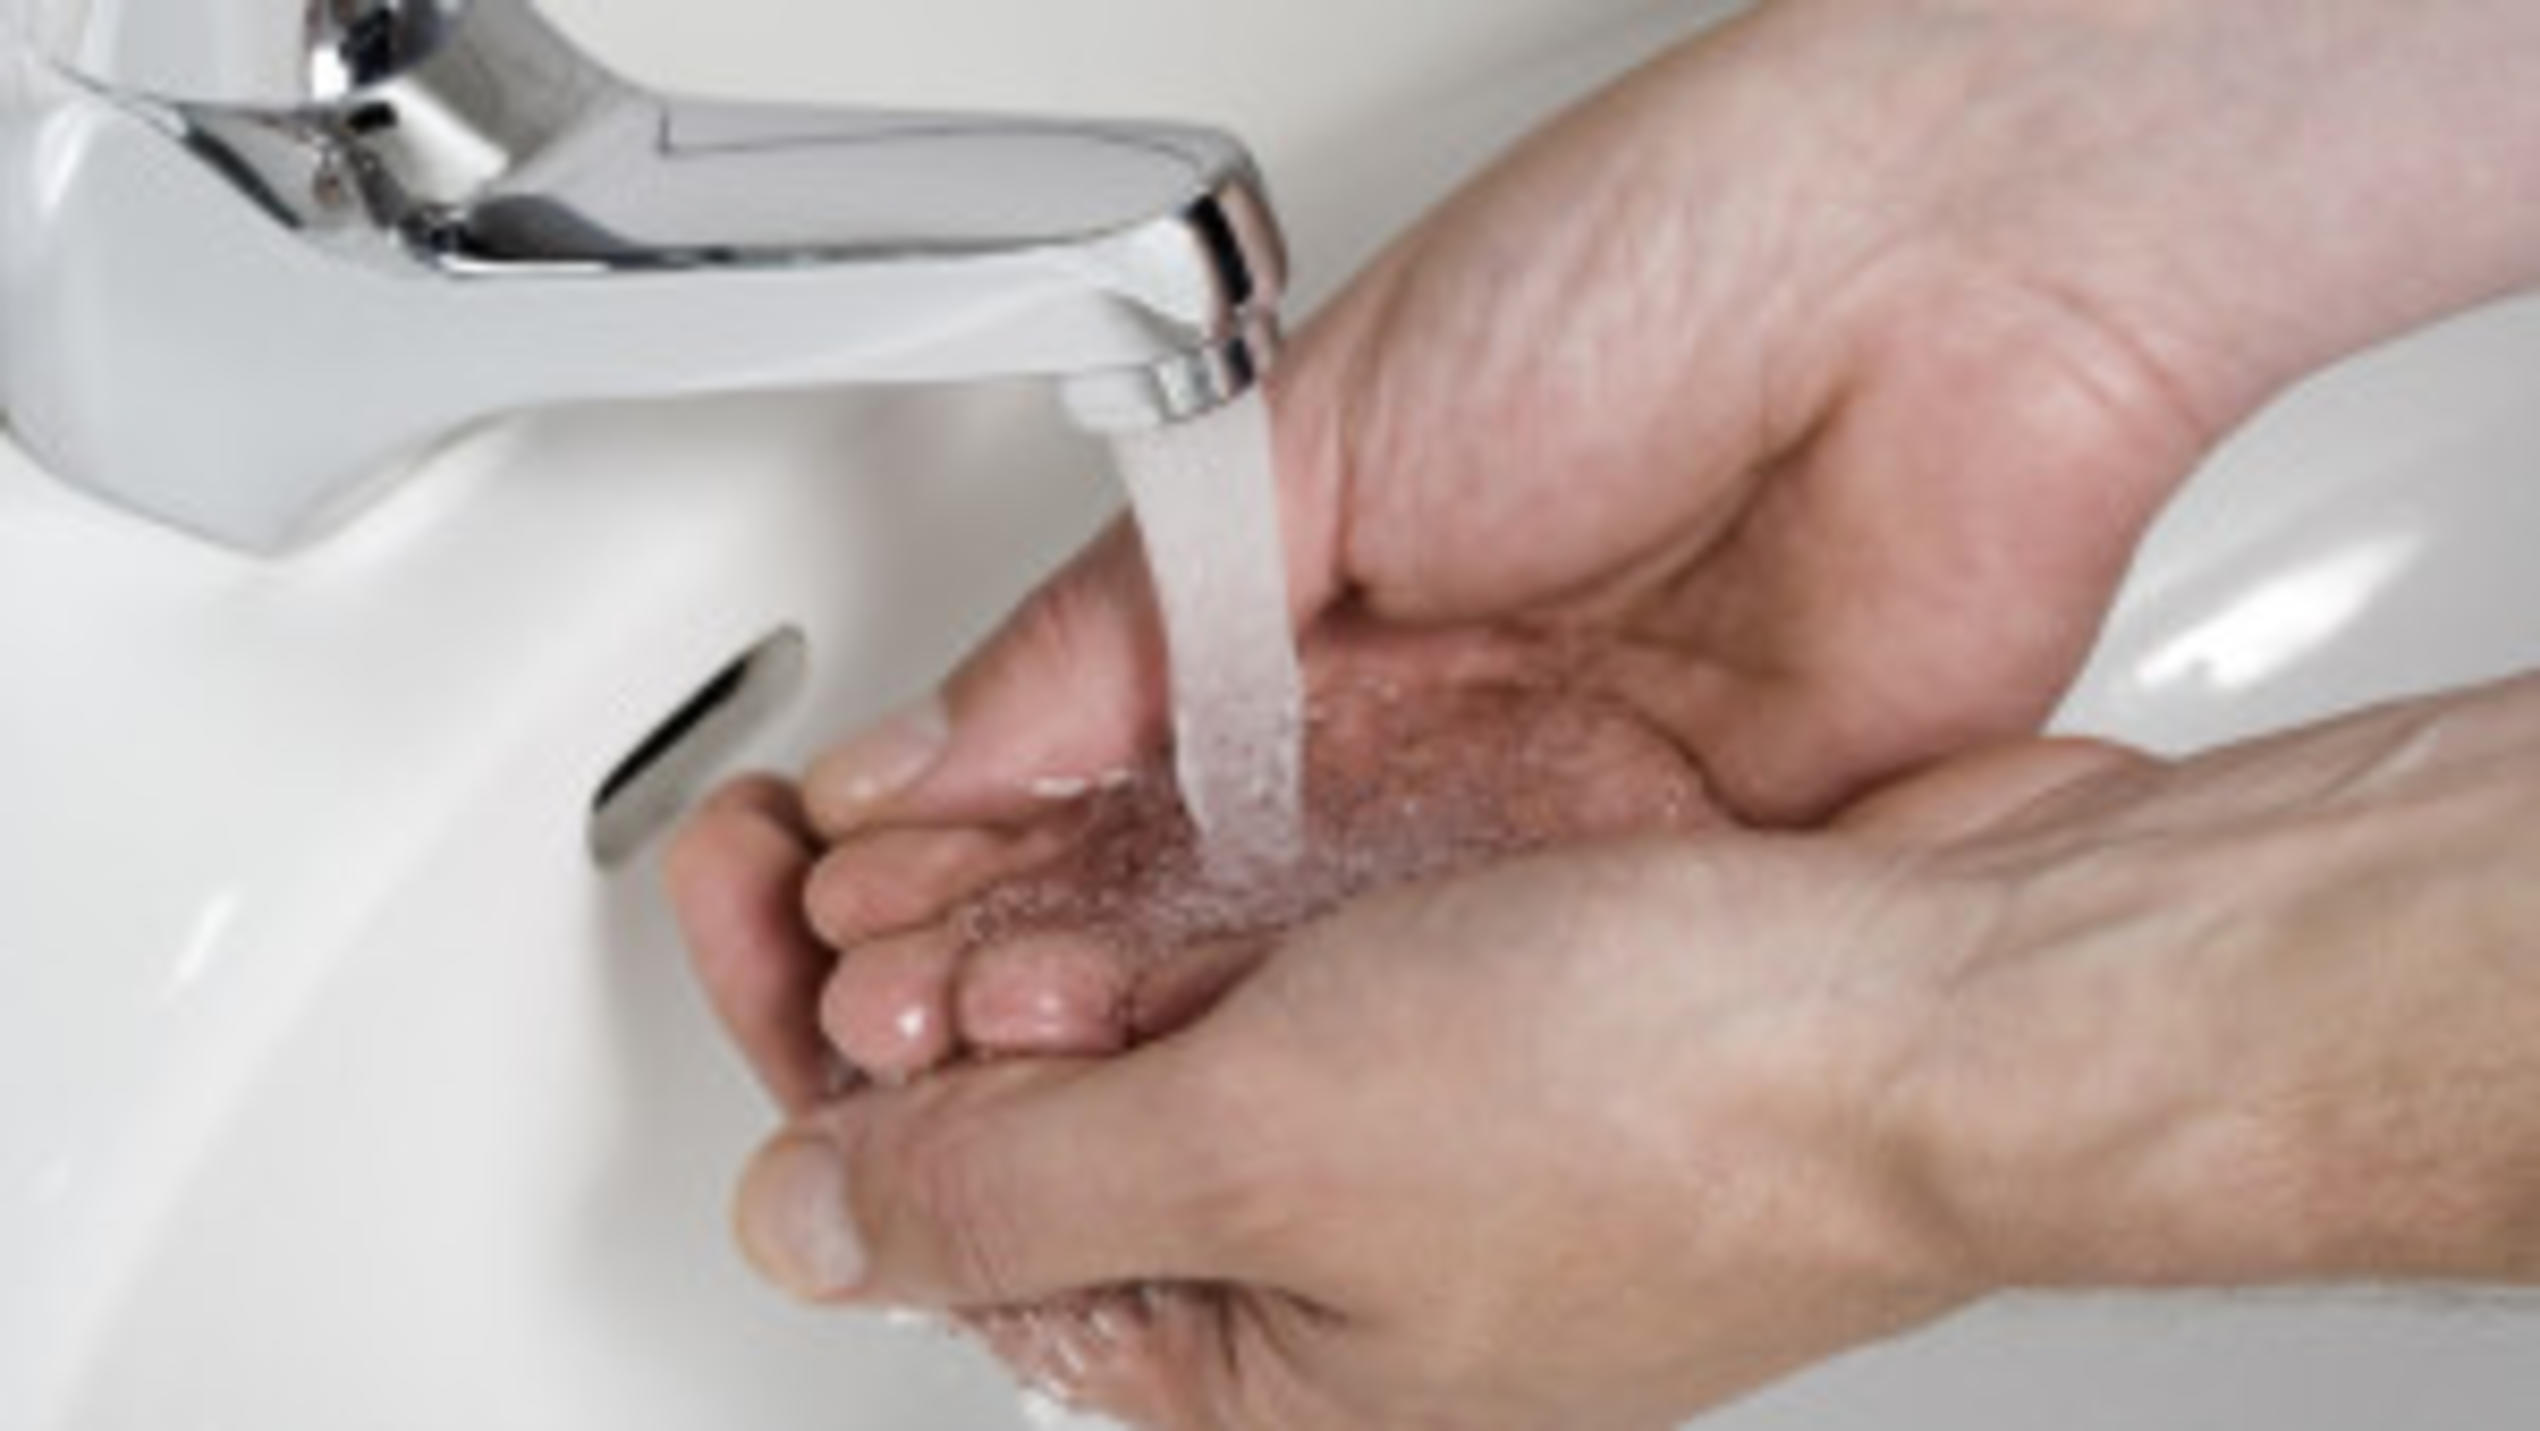 Hände waschen ist erste Bürgerpflicht, wenn es darum geht, Infektionen zu vermeiden.